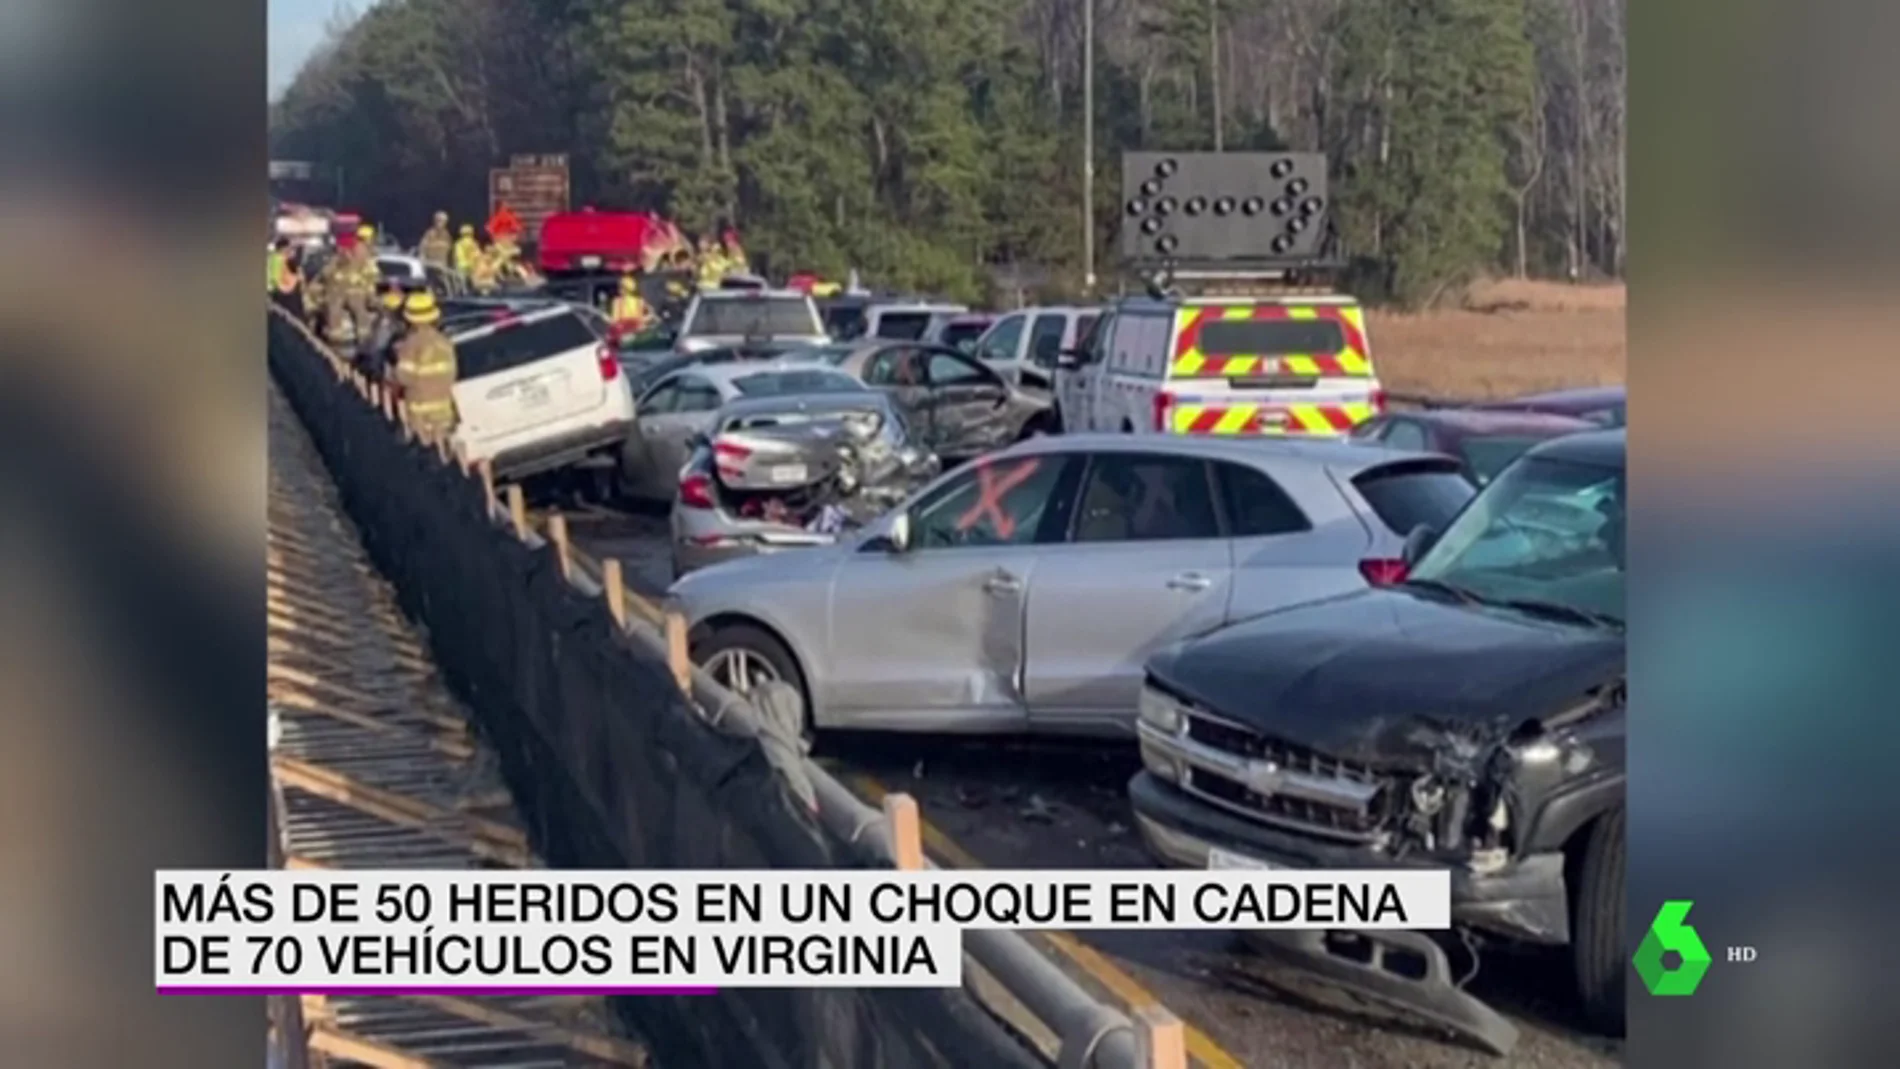 Más de 70 coches provocan un choque en cadena en Virginia